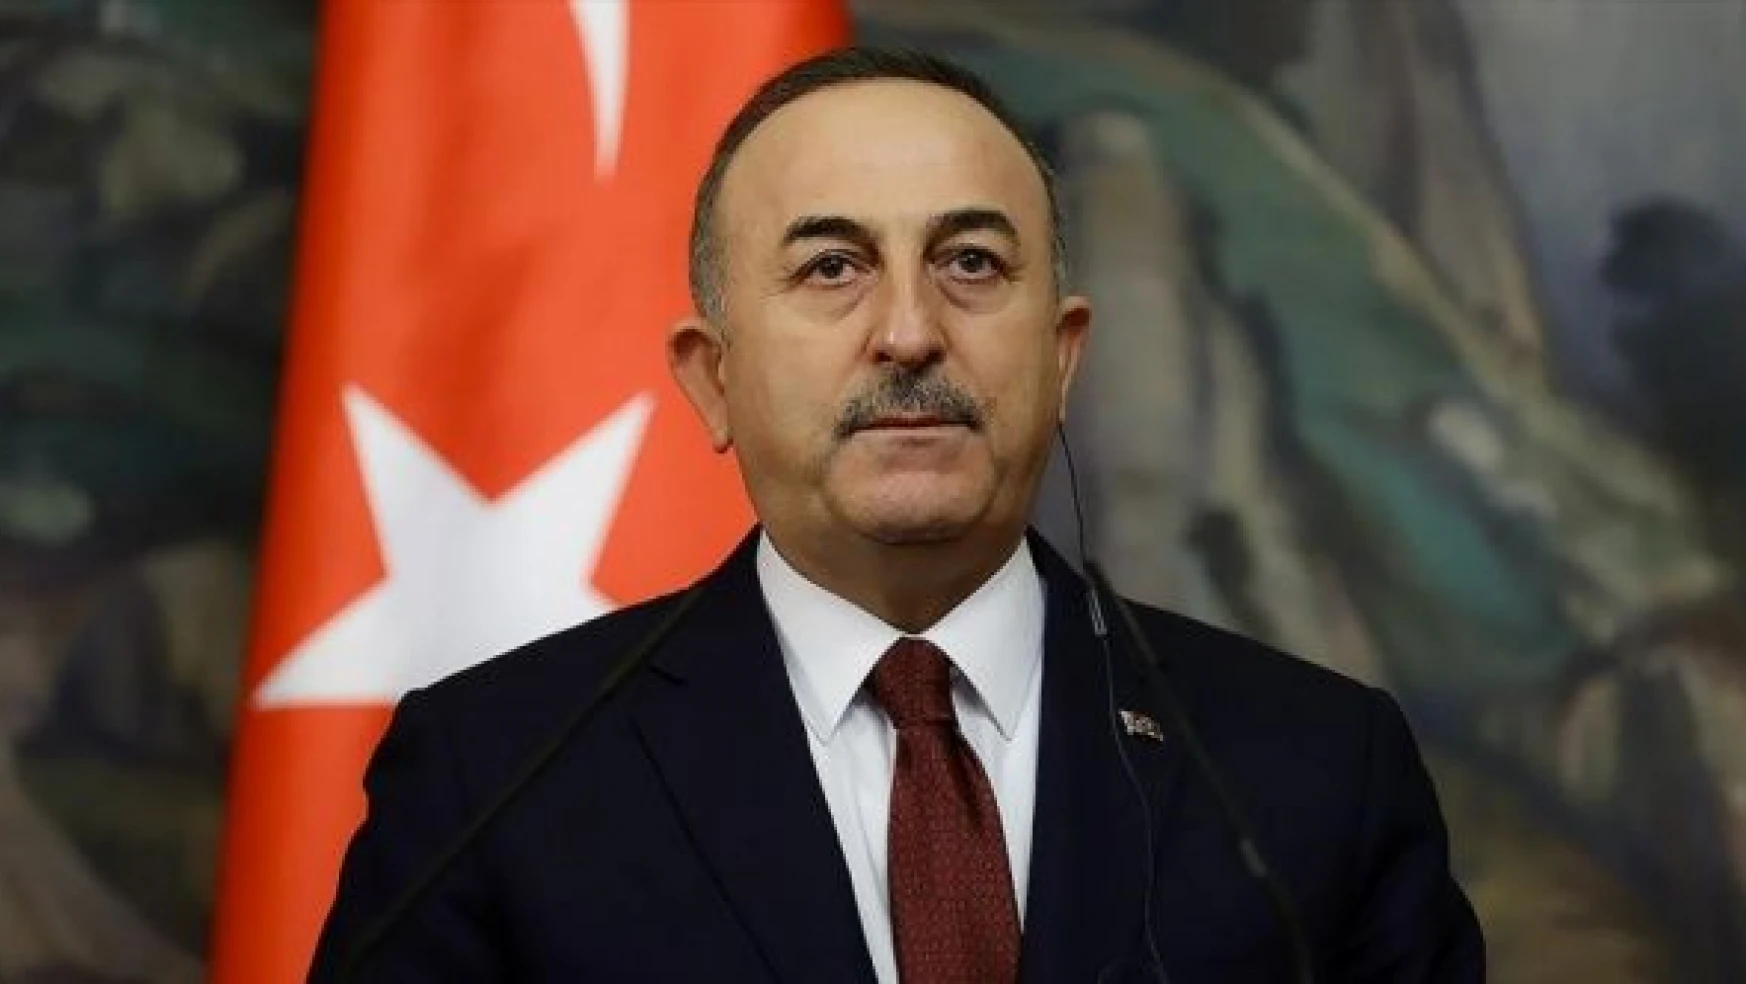 Dışişleri Bakanı Çavuşoğlu: "Mısır'la ilişkiler düzelir, düzelmesi de gerekiyor"